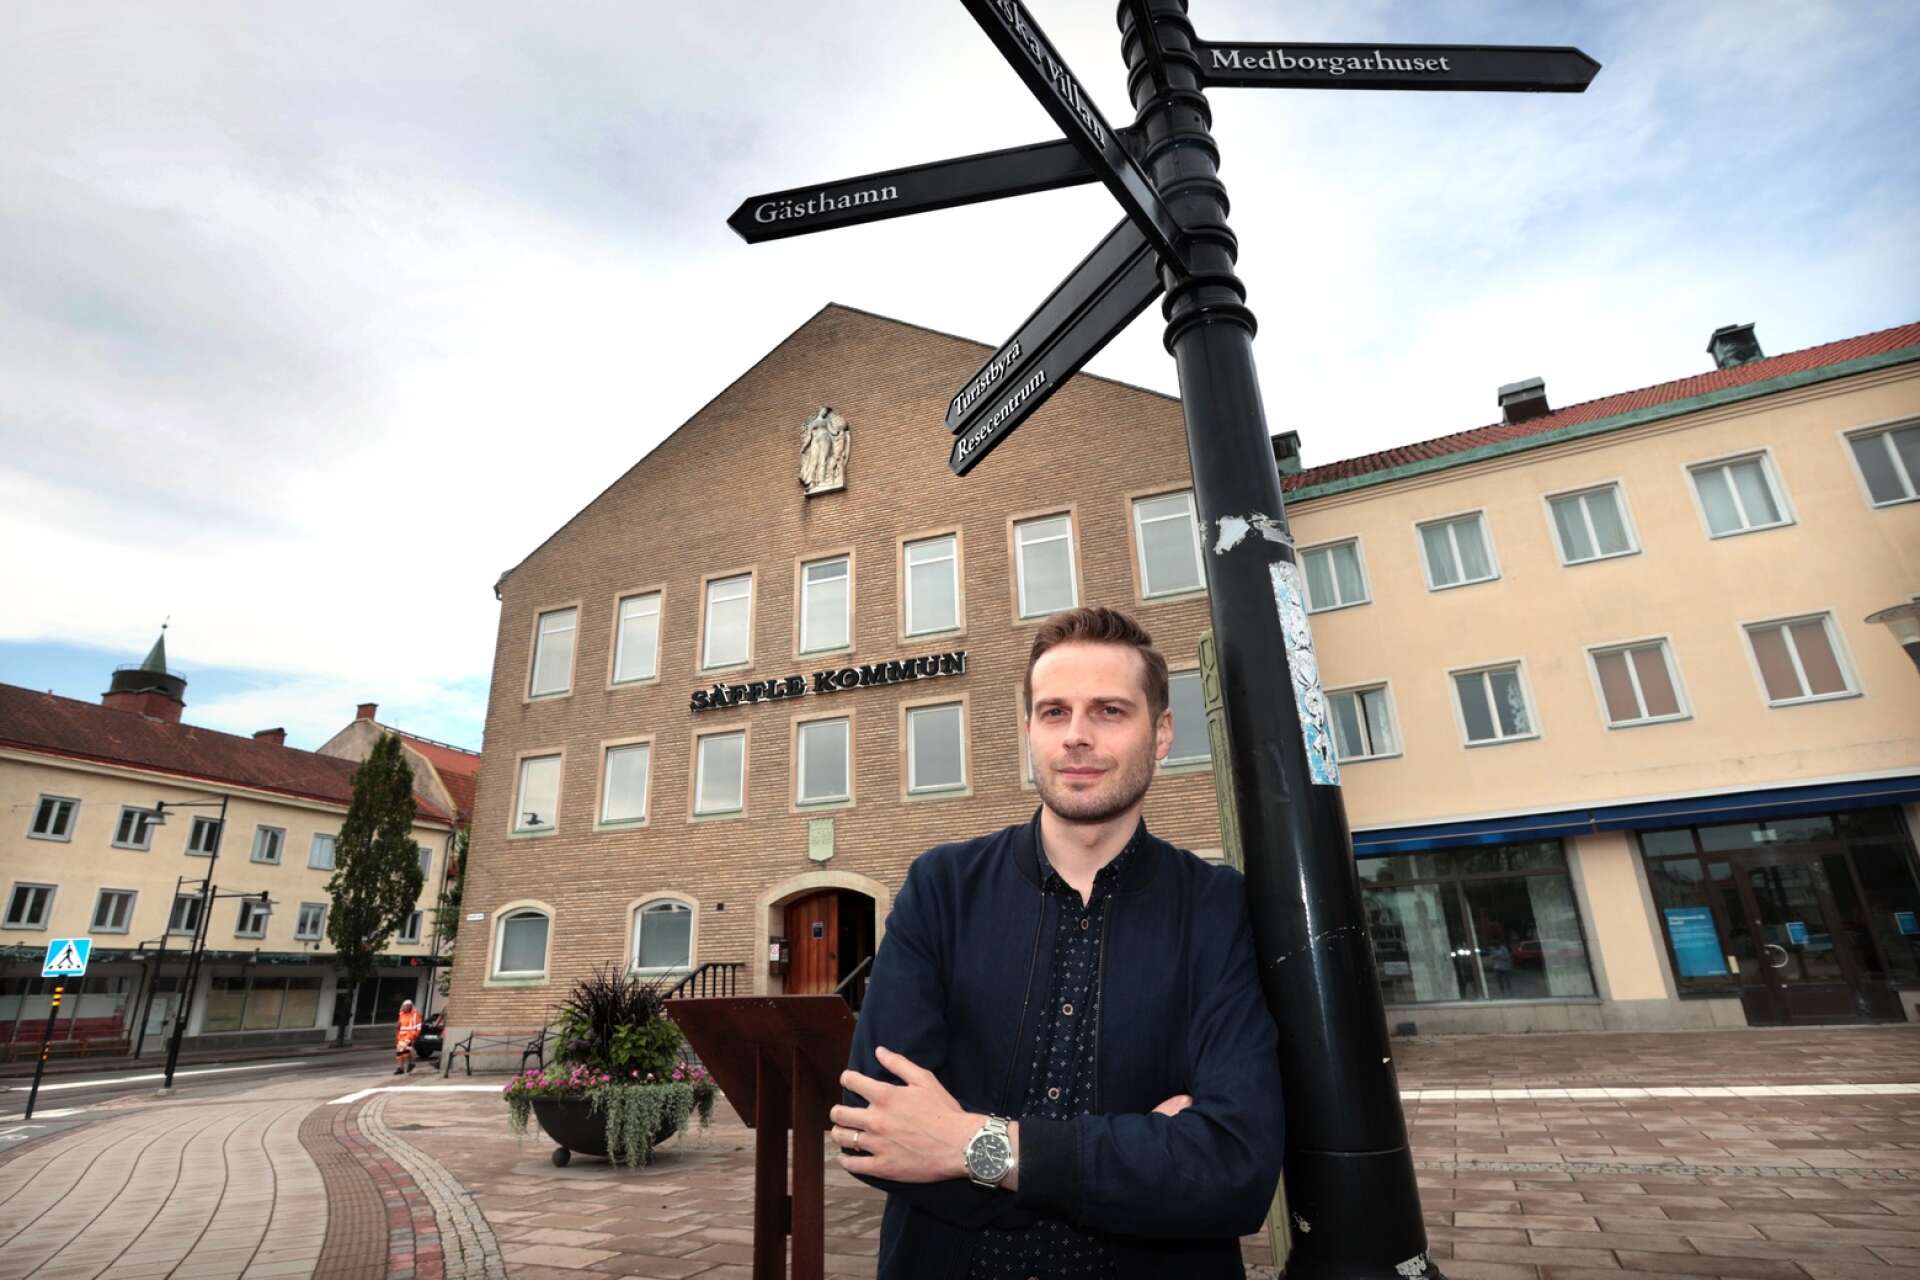 Johan Österman, kommunikationsansvarig på Säffle kommun, gillar frasen ”Sveriges yngsta stad” som i den här bilden representeras av stadshuset som uppfördes i samma veva.